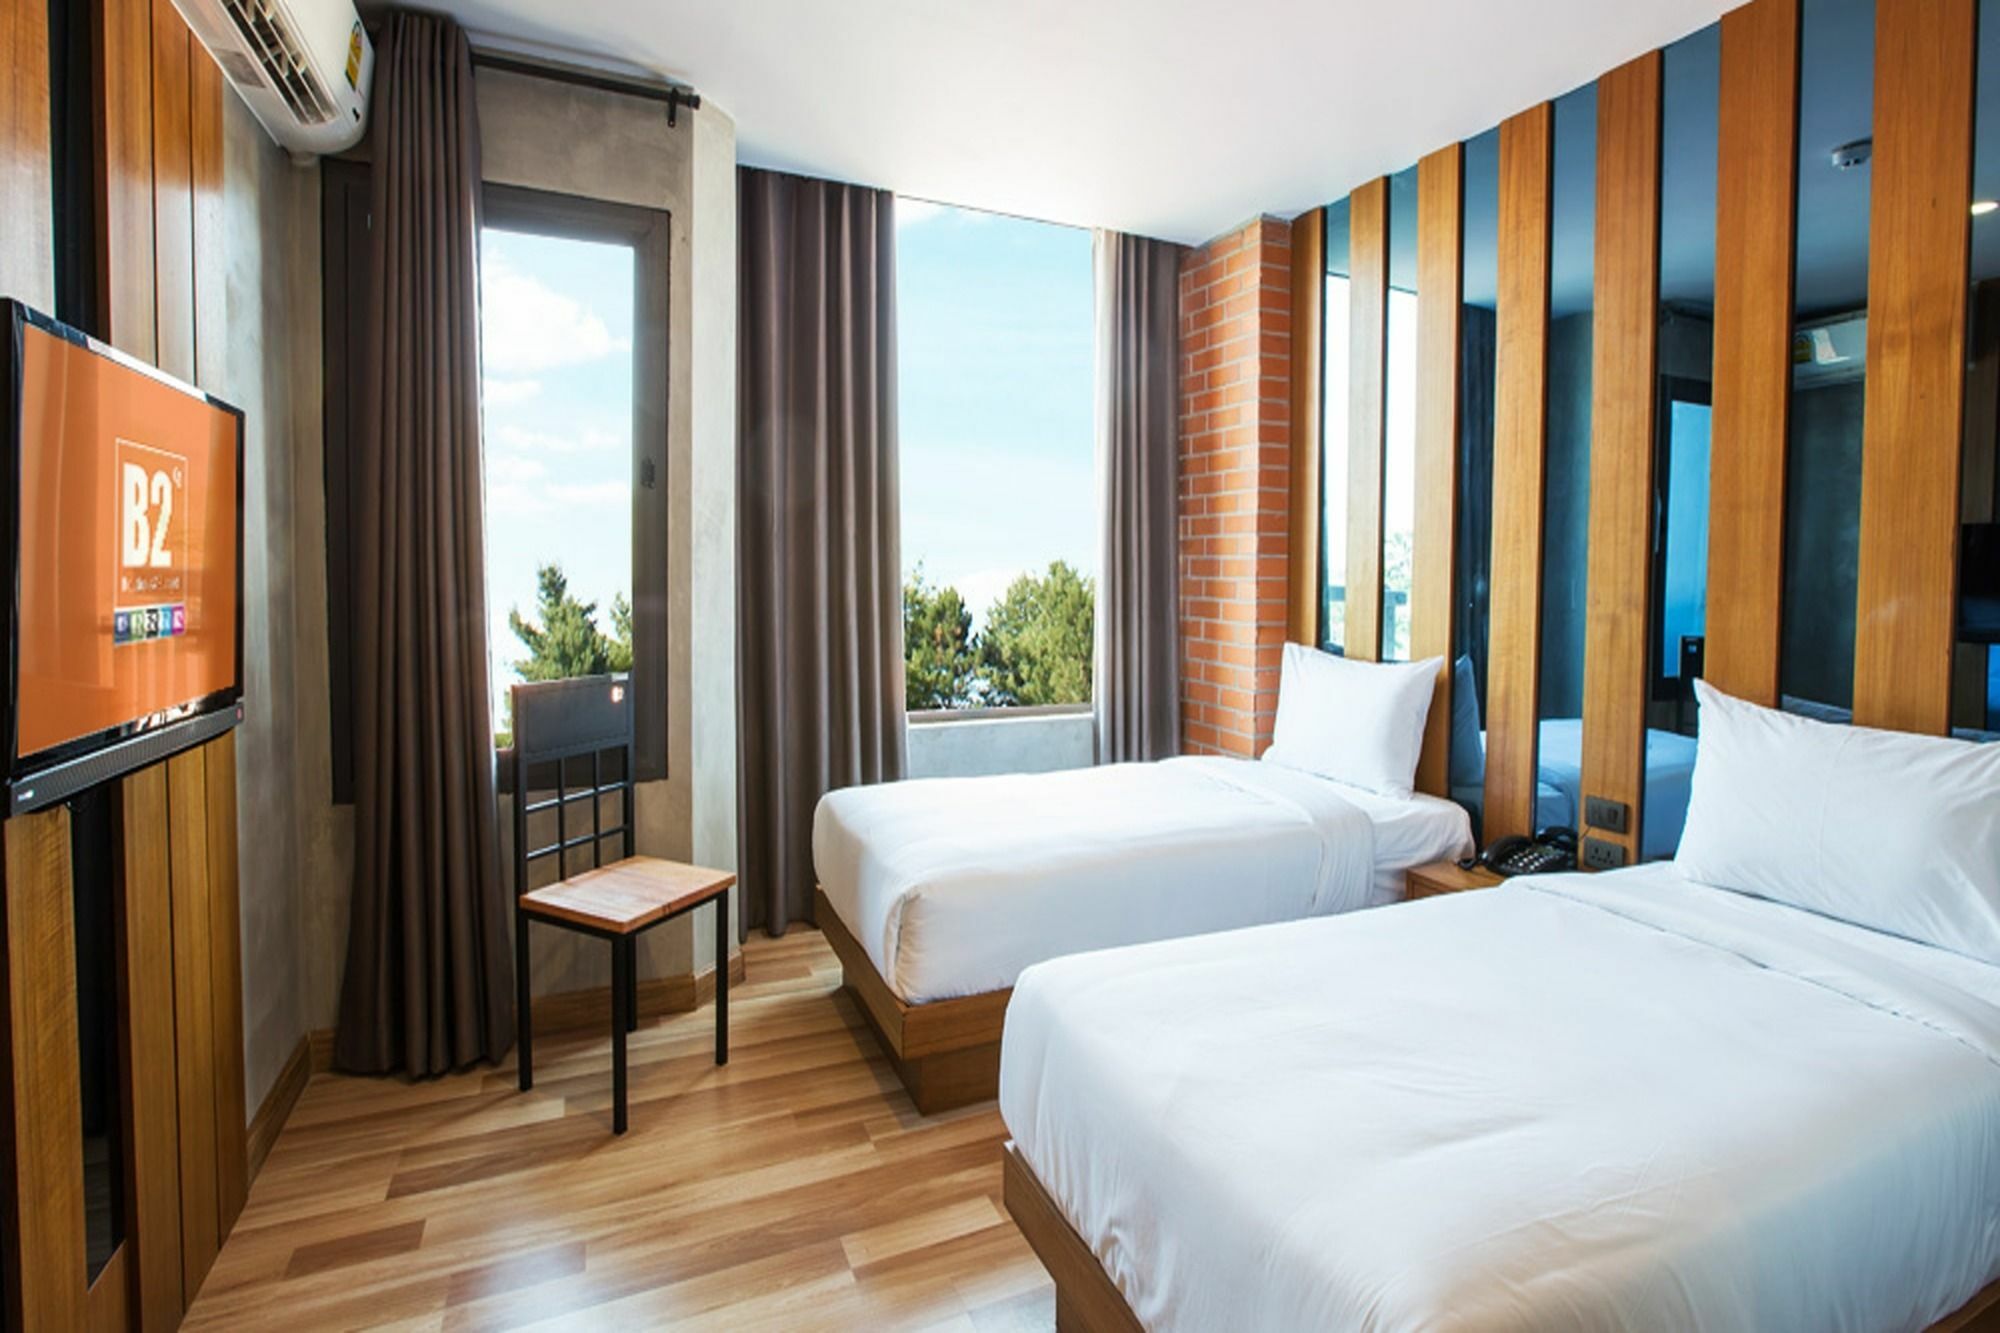 โรงแรม B2 UDON THANI BOUTIQUE AND BUDGET HOTEL อุดรธานี 3* (ไทย) - จาก 510  THB | HOTELMIX